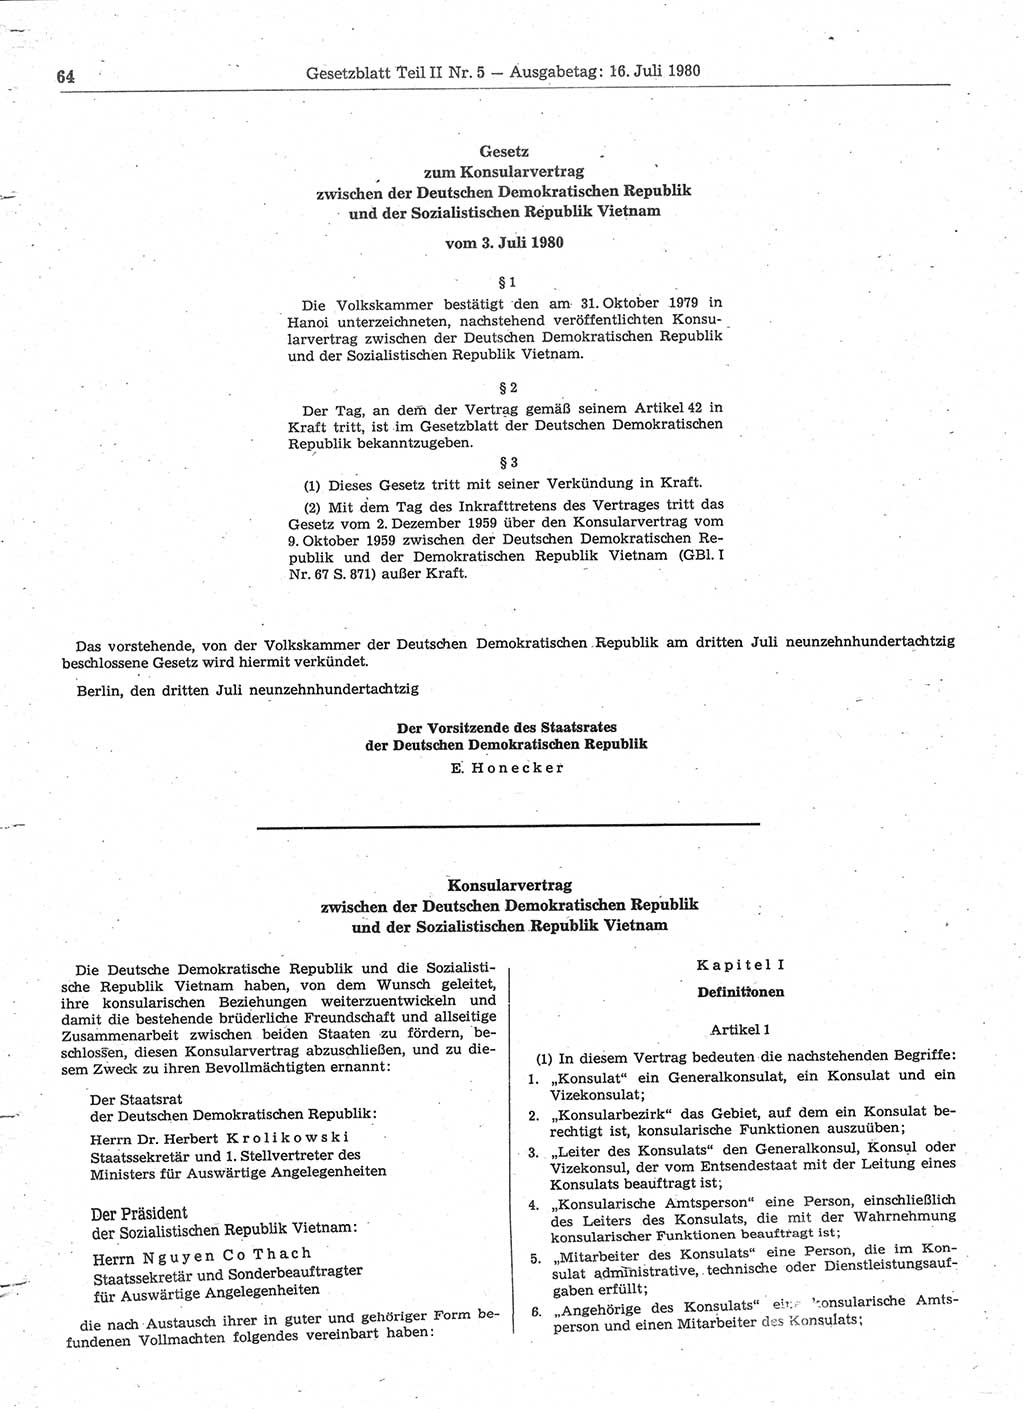 Gesetzblatt (GBl.) der Deutschen Demokratischen Republik (DDR) Teil ⅠⅠ 1980, Seite 64 (GBl. DDR ⅠⅠ 1980, S. 64)